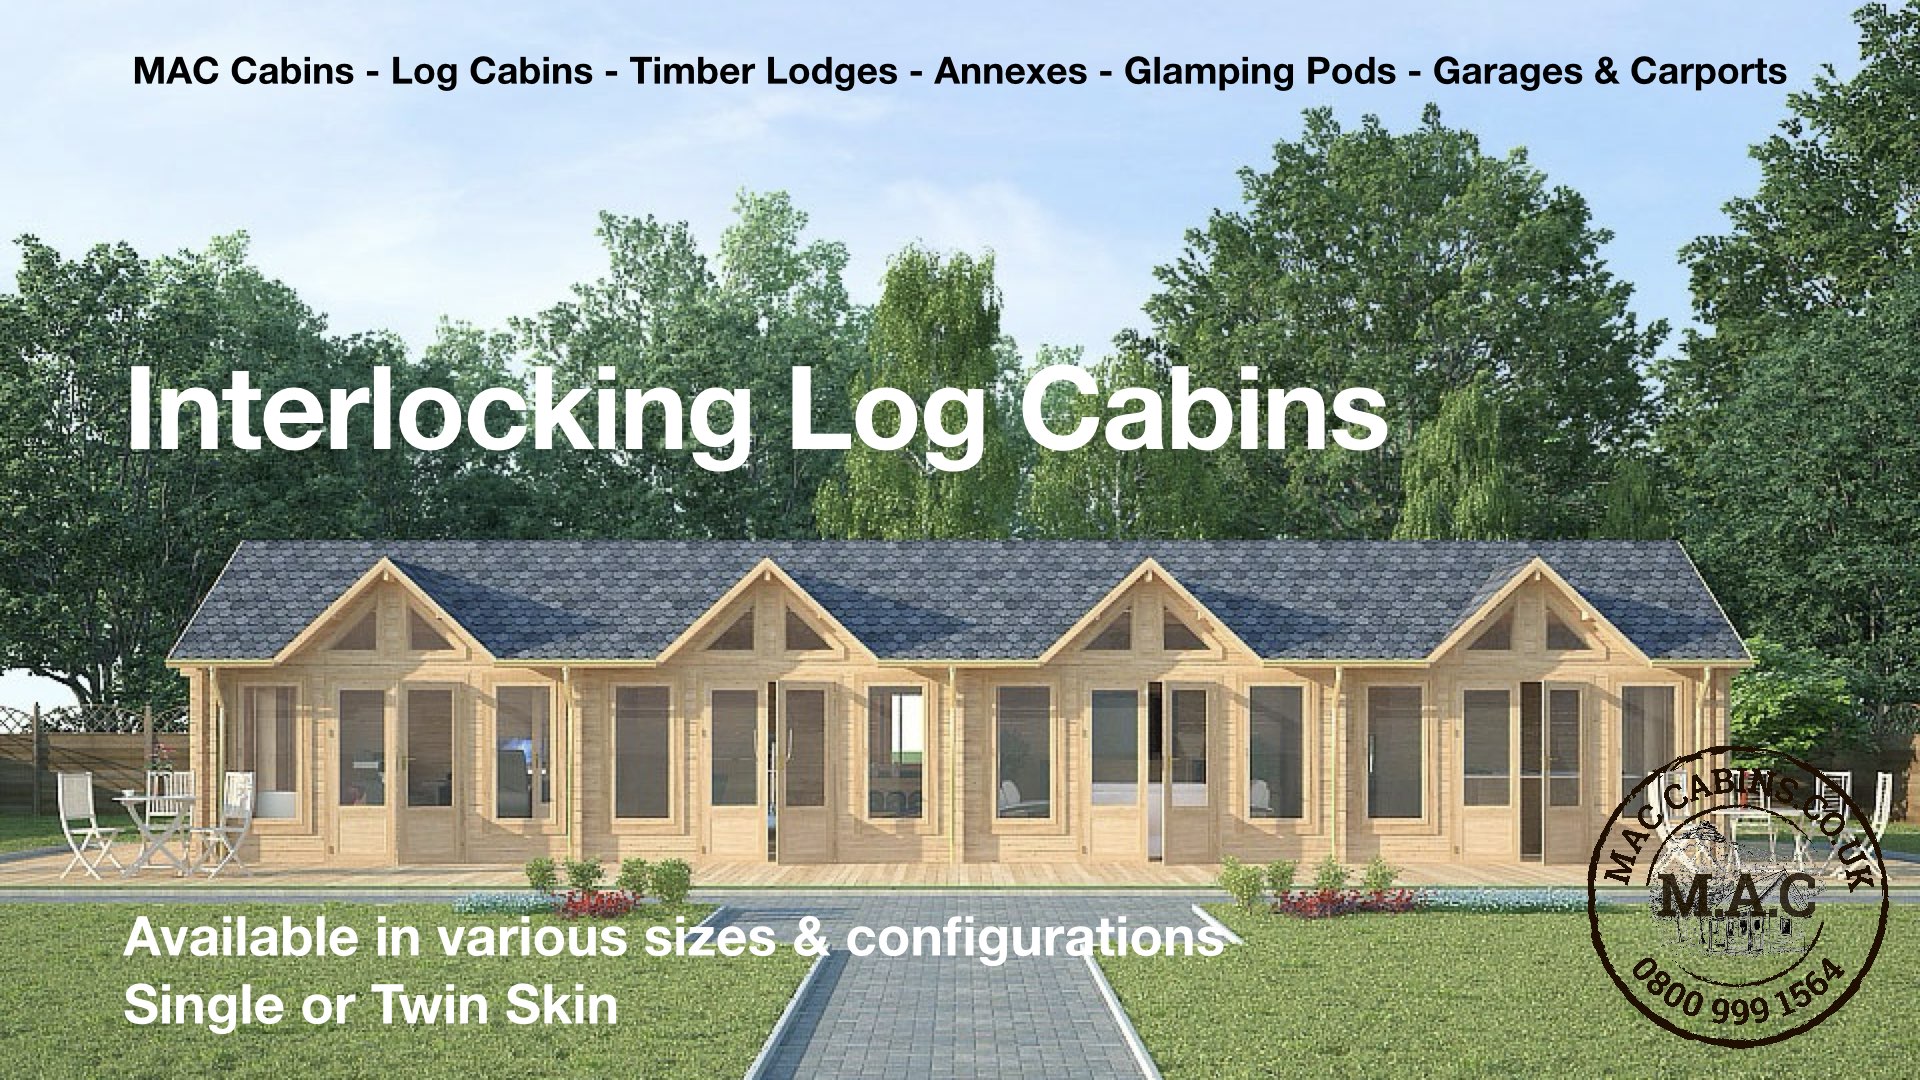 MAC Cabins, Interlocking Log Cabins